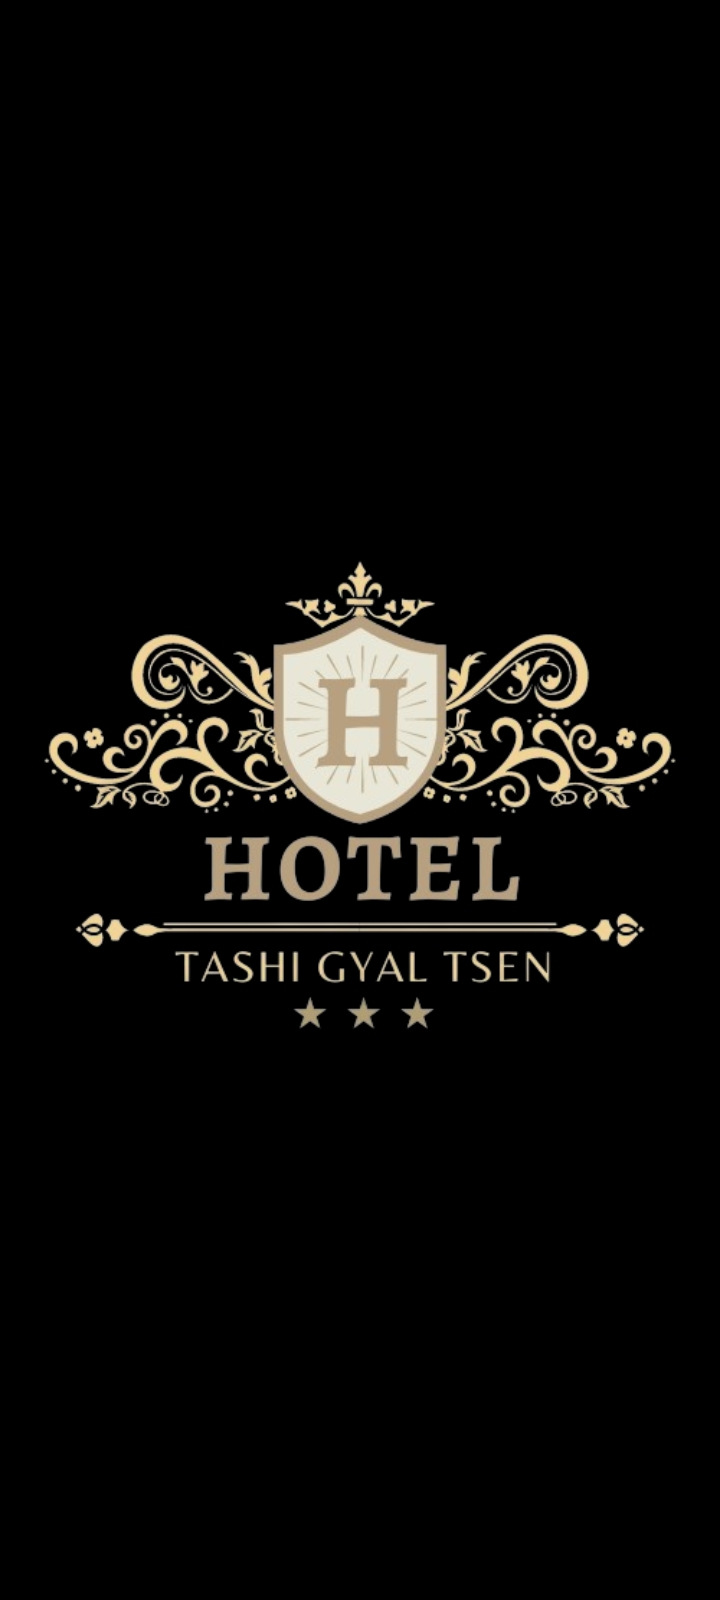 Hotel Tashi Gyal Tsen